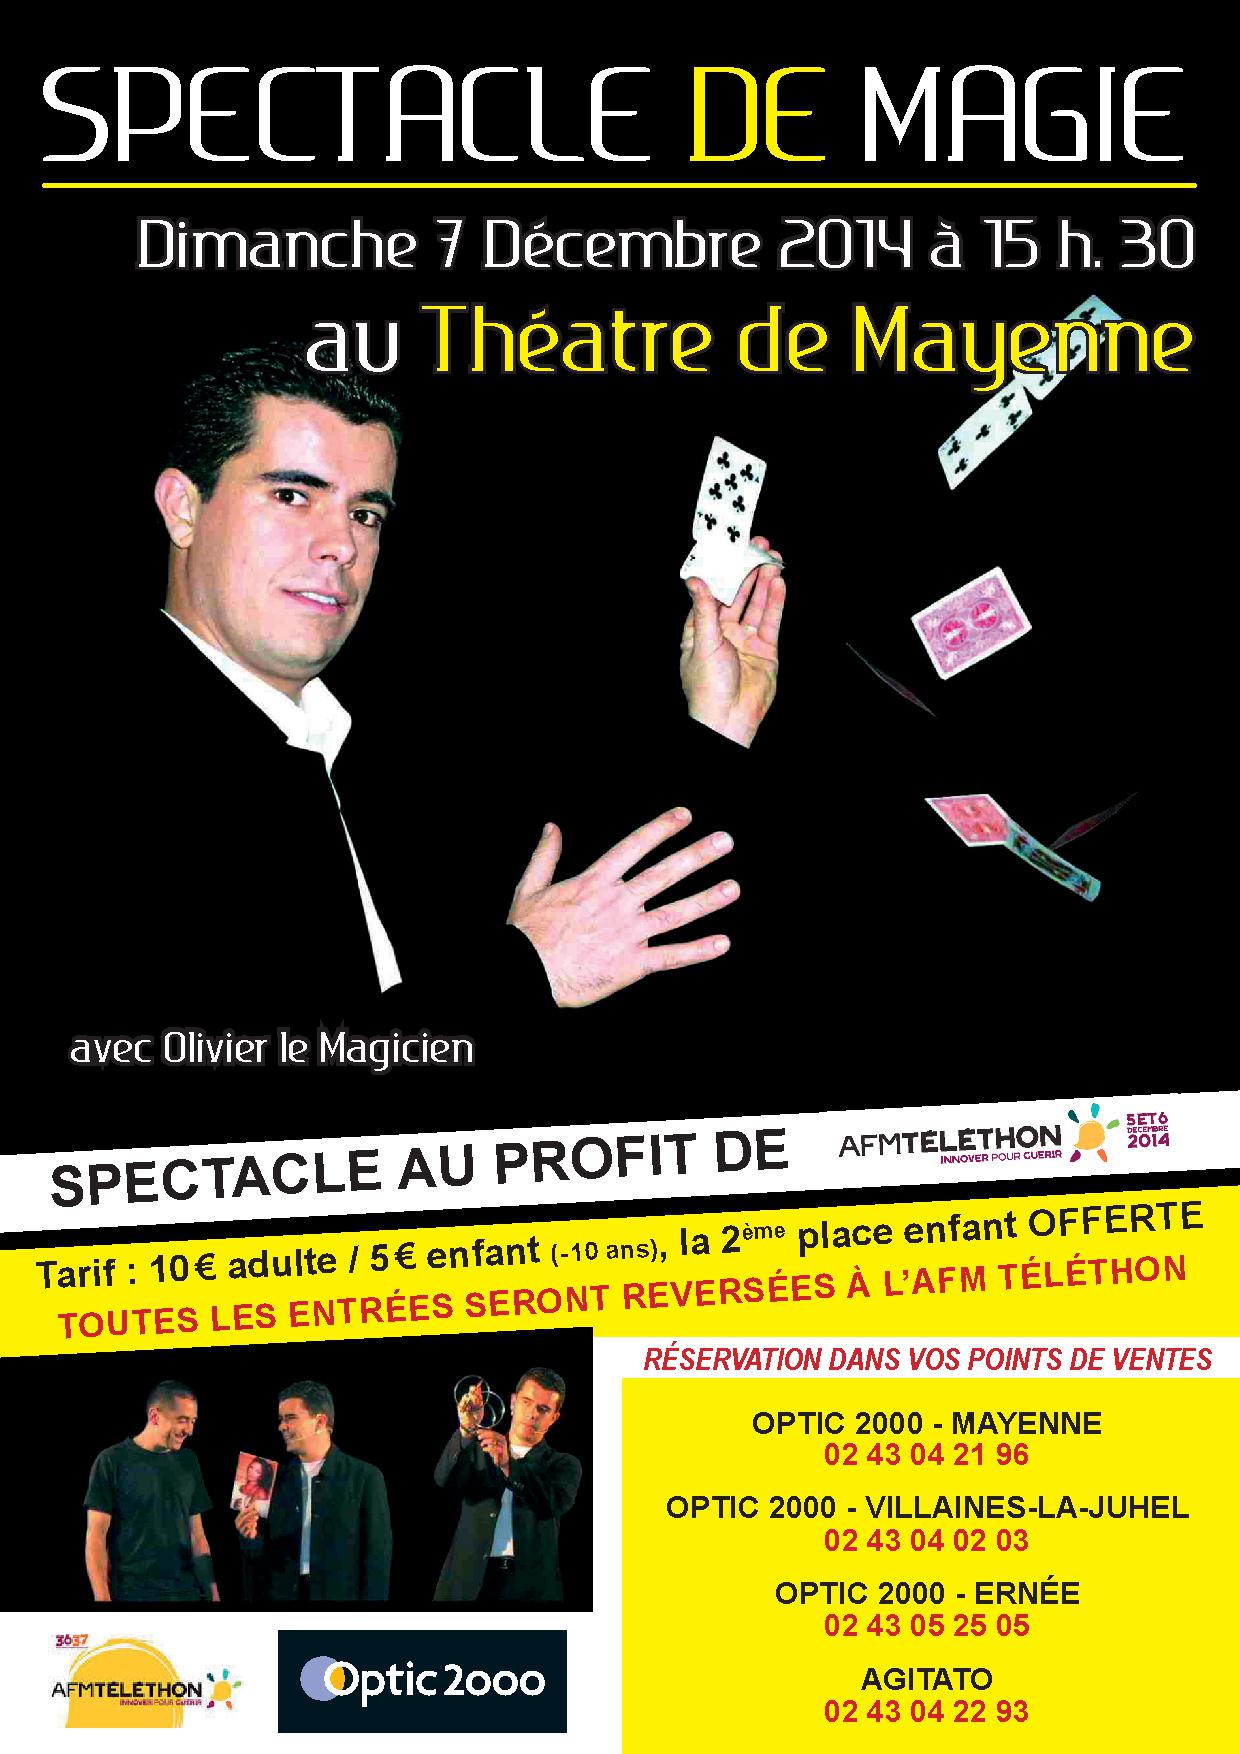 Affiche Spectacle de MagieTéléthon Mayenne 07.12.14